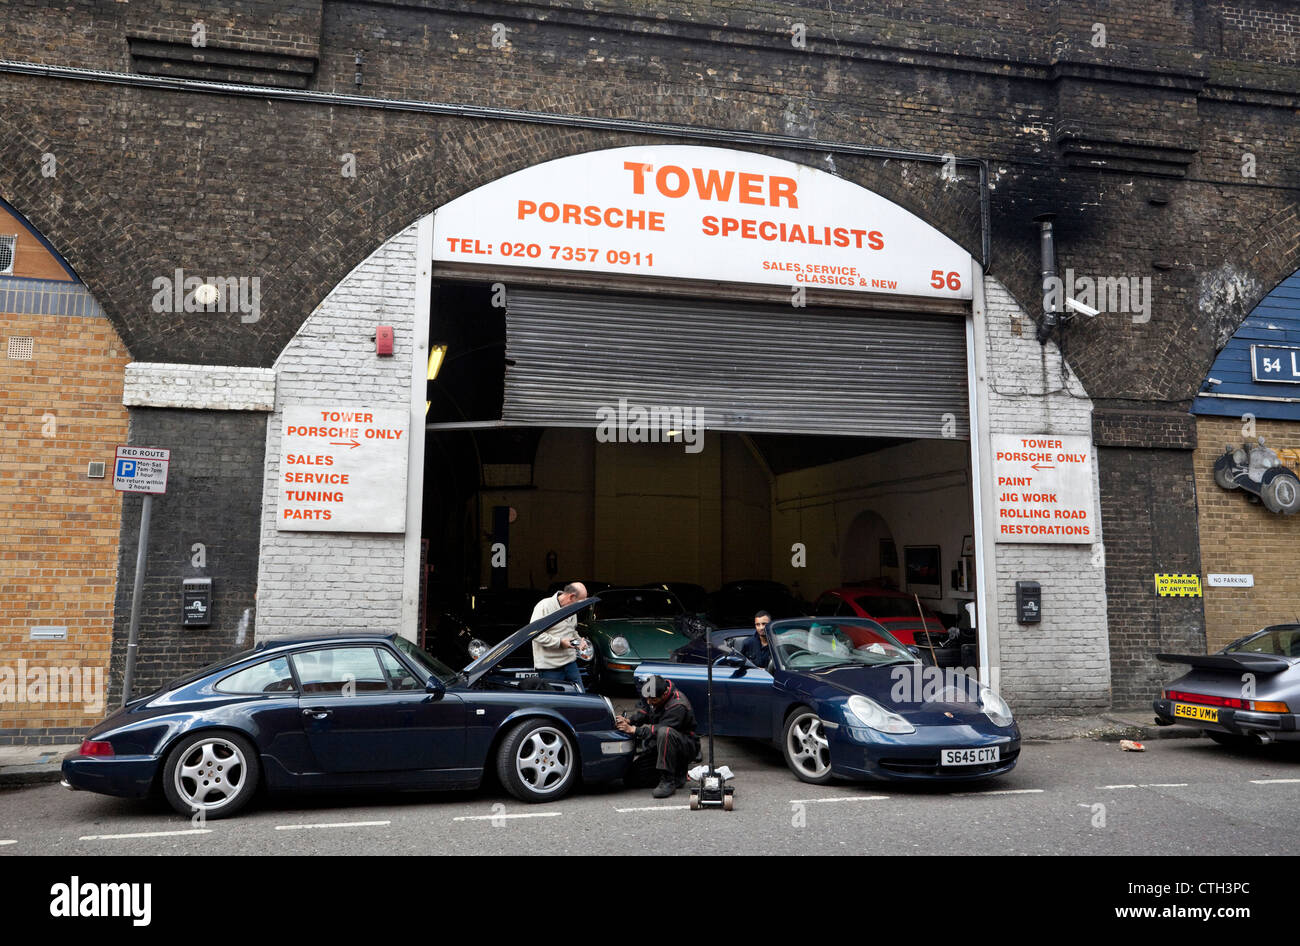 Mechaniker, die an Porches in einer Porsche-Spezialwerkstatt, Druid Street,  London, England, UK arbeiten Stockfotografie - Alamy